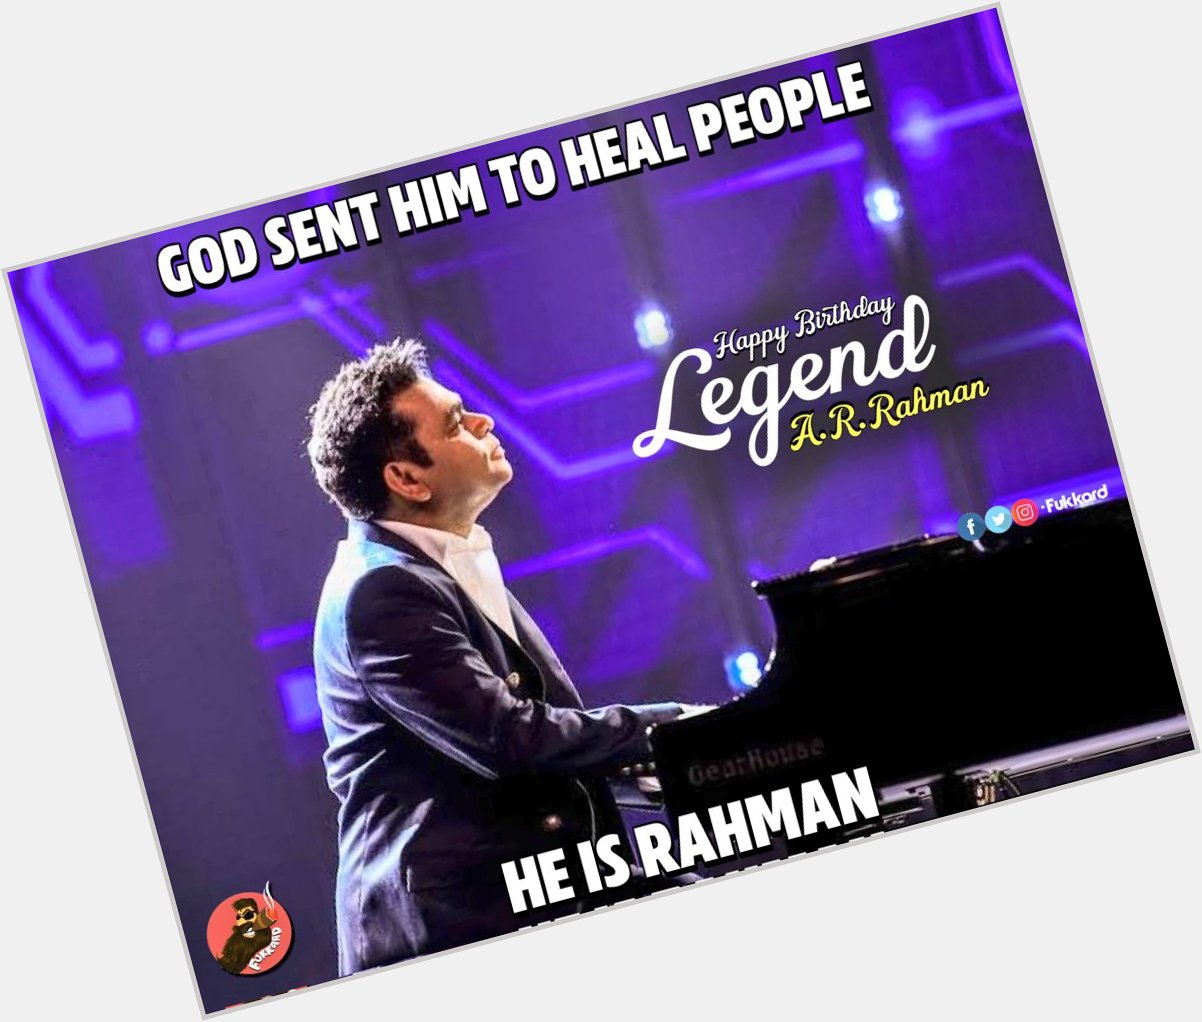 Happy birthday the legend A.R Rahman sir...     